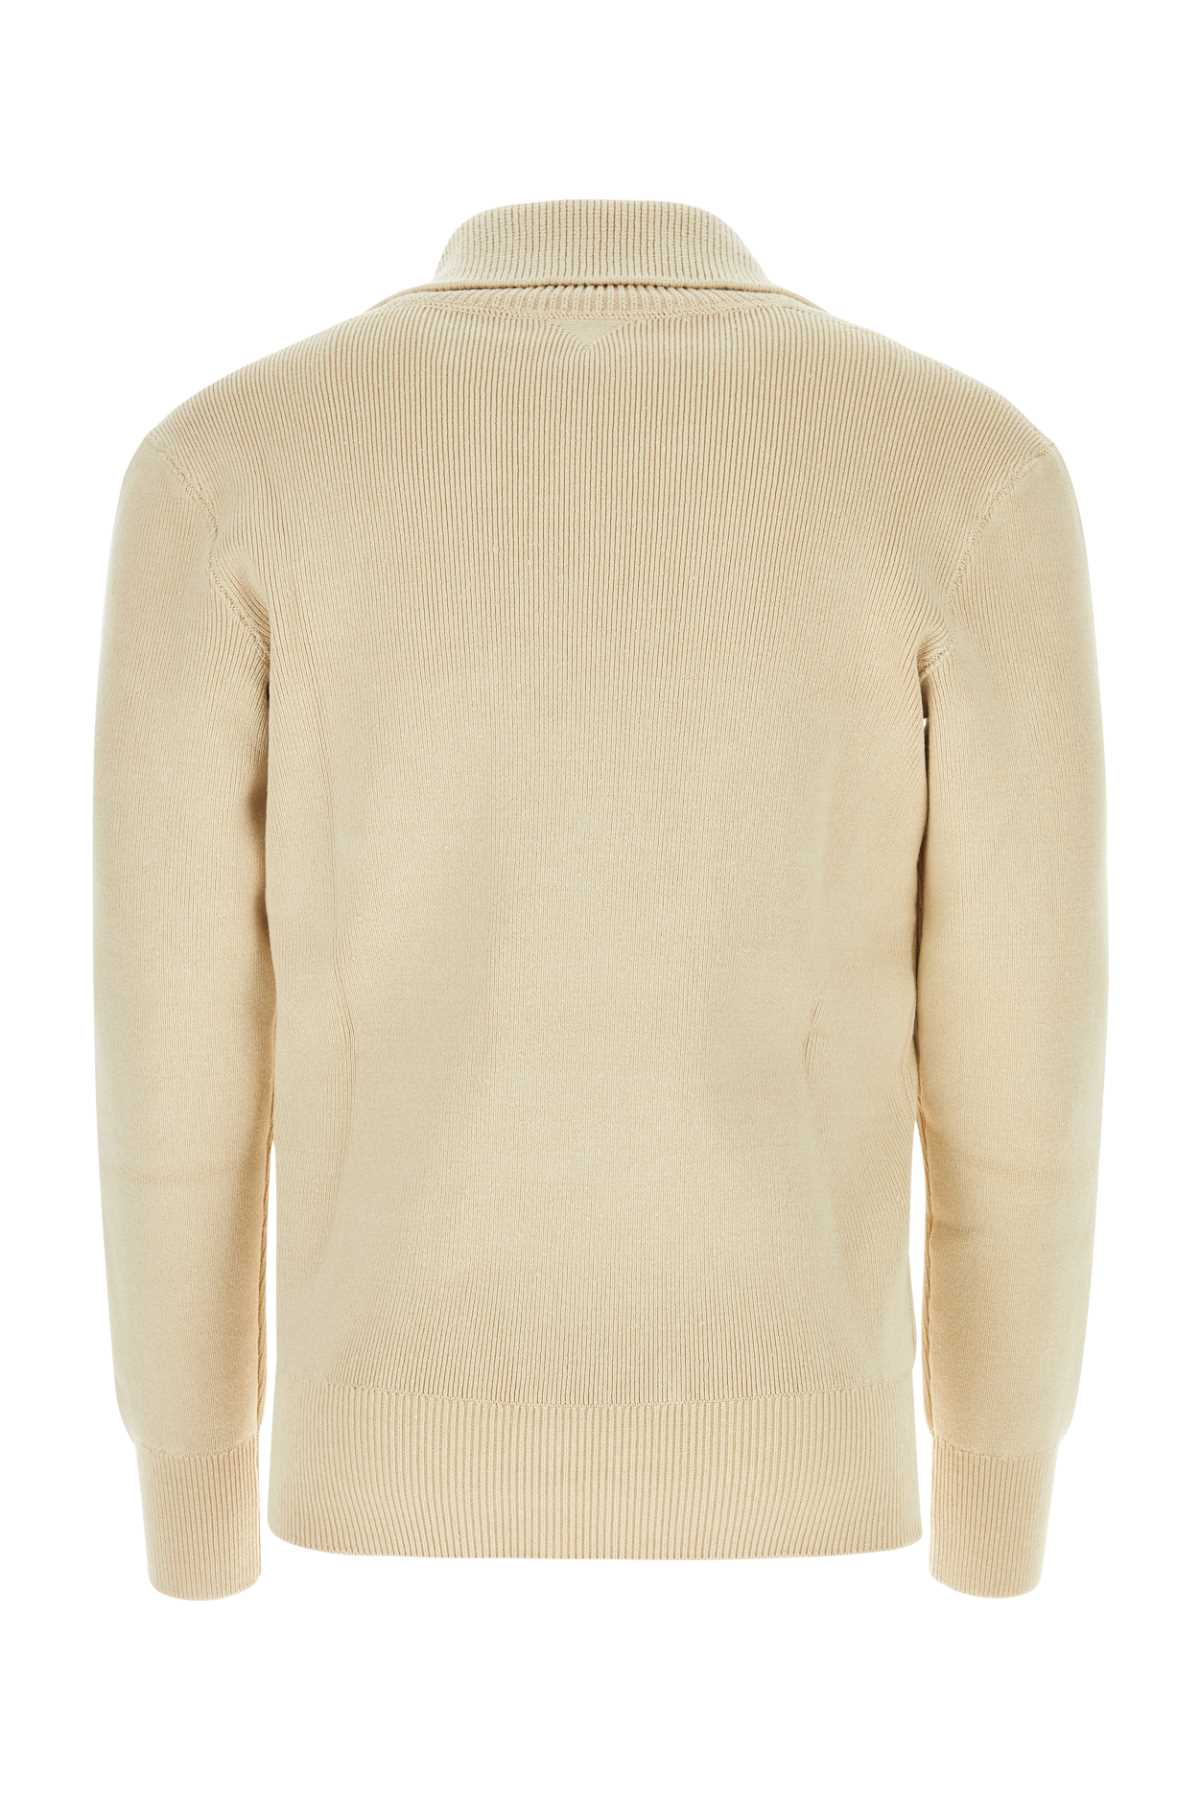 Shop Bottega Veneta Beige Linen Blend Sweater